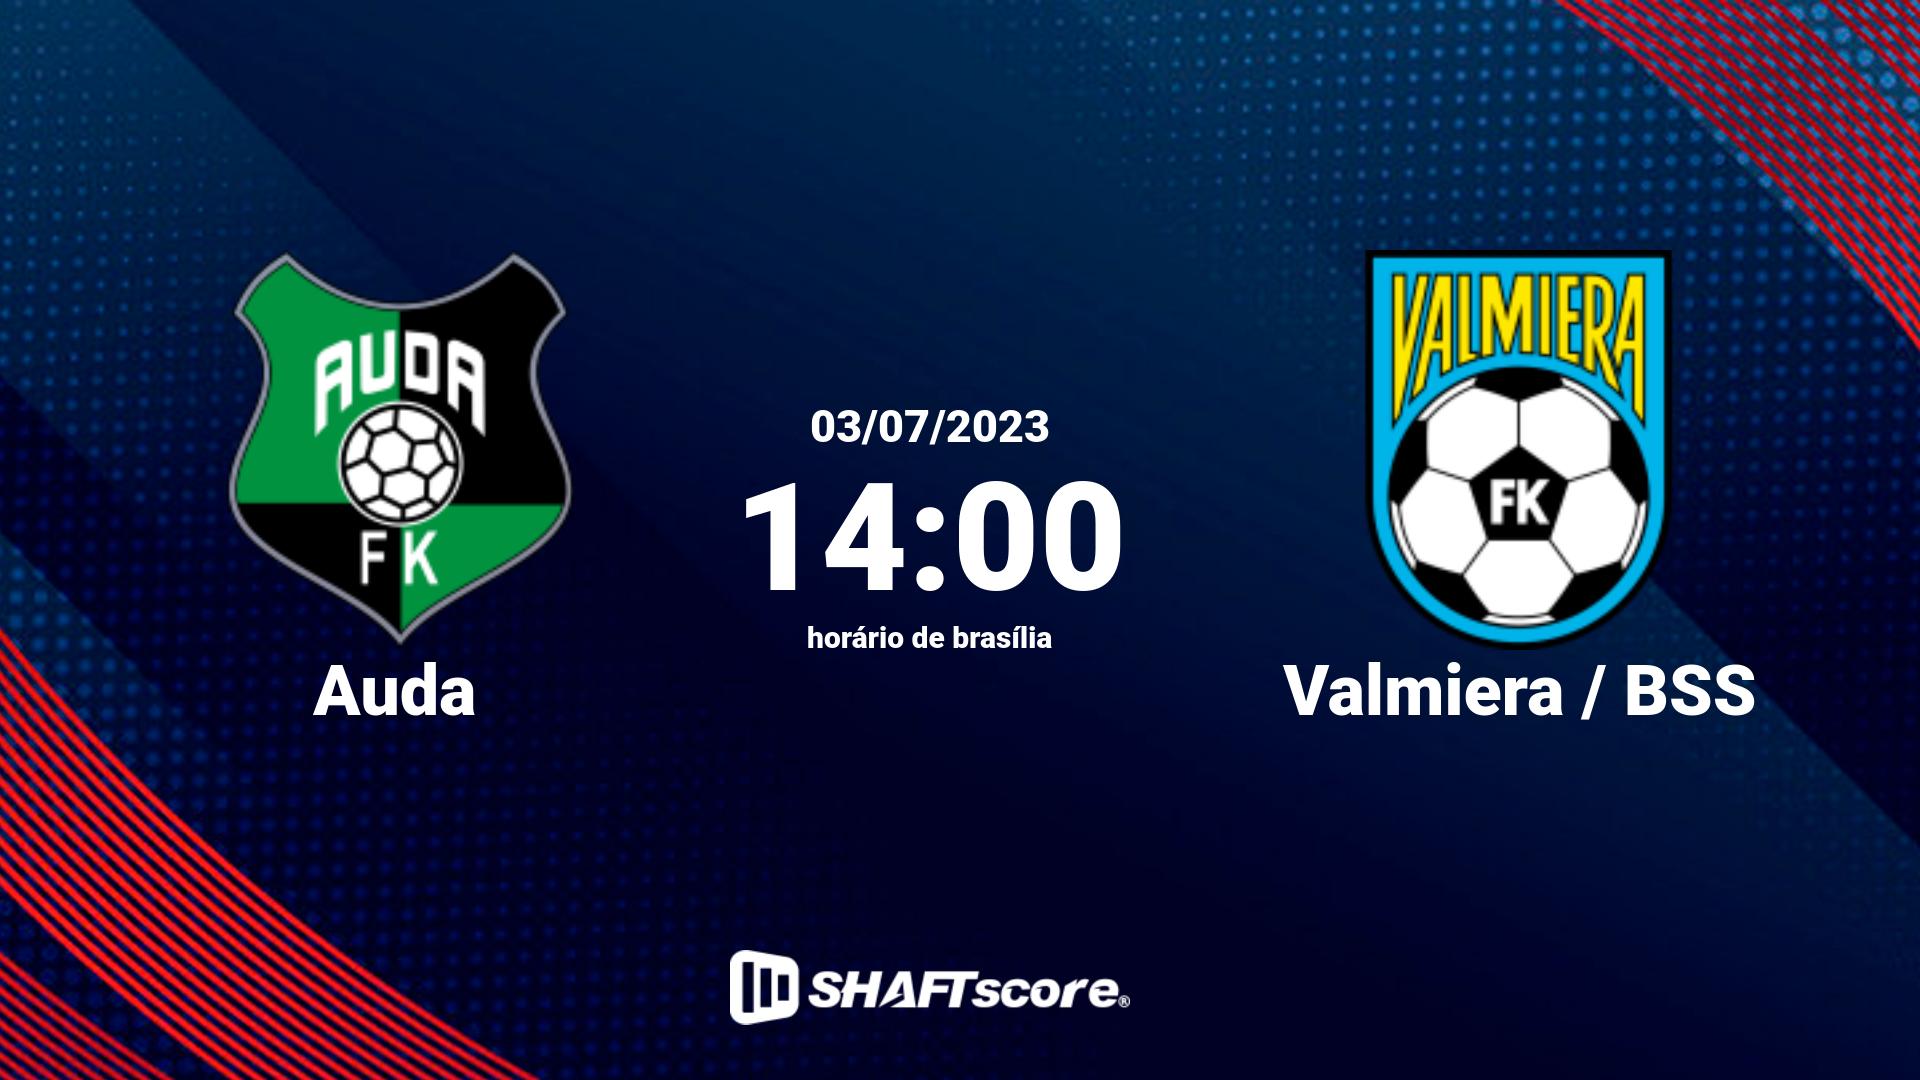 Estatísticas do jogo Auda vs Valmiera / BSS 03.07 14:00